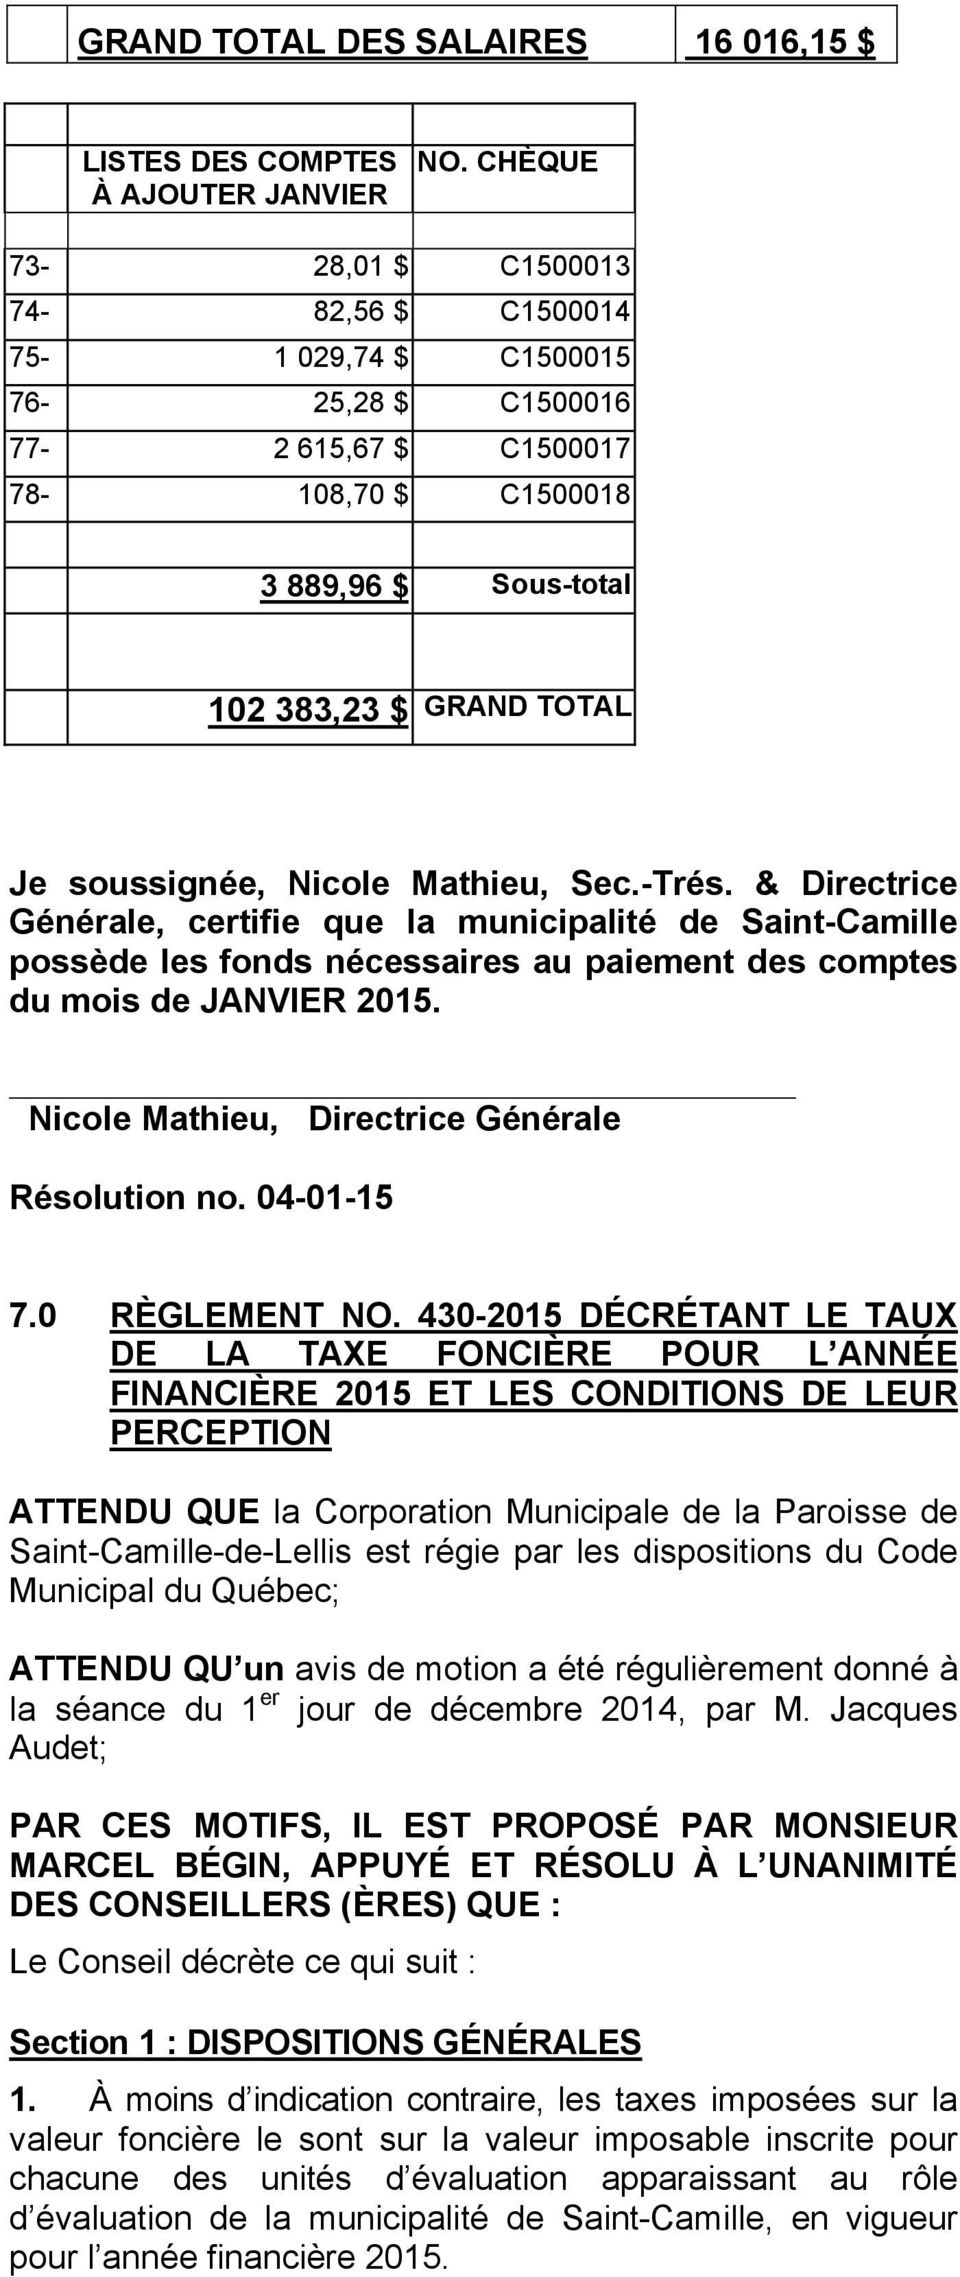 Nicole Mathieu, Sec.-Trés. & Directrice Générale, certifie que la municipalité de Saint-Camille possède les fonds nécessaires au paiement des comptes du mois de JANVIER 2015.